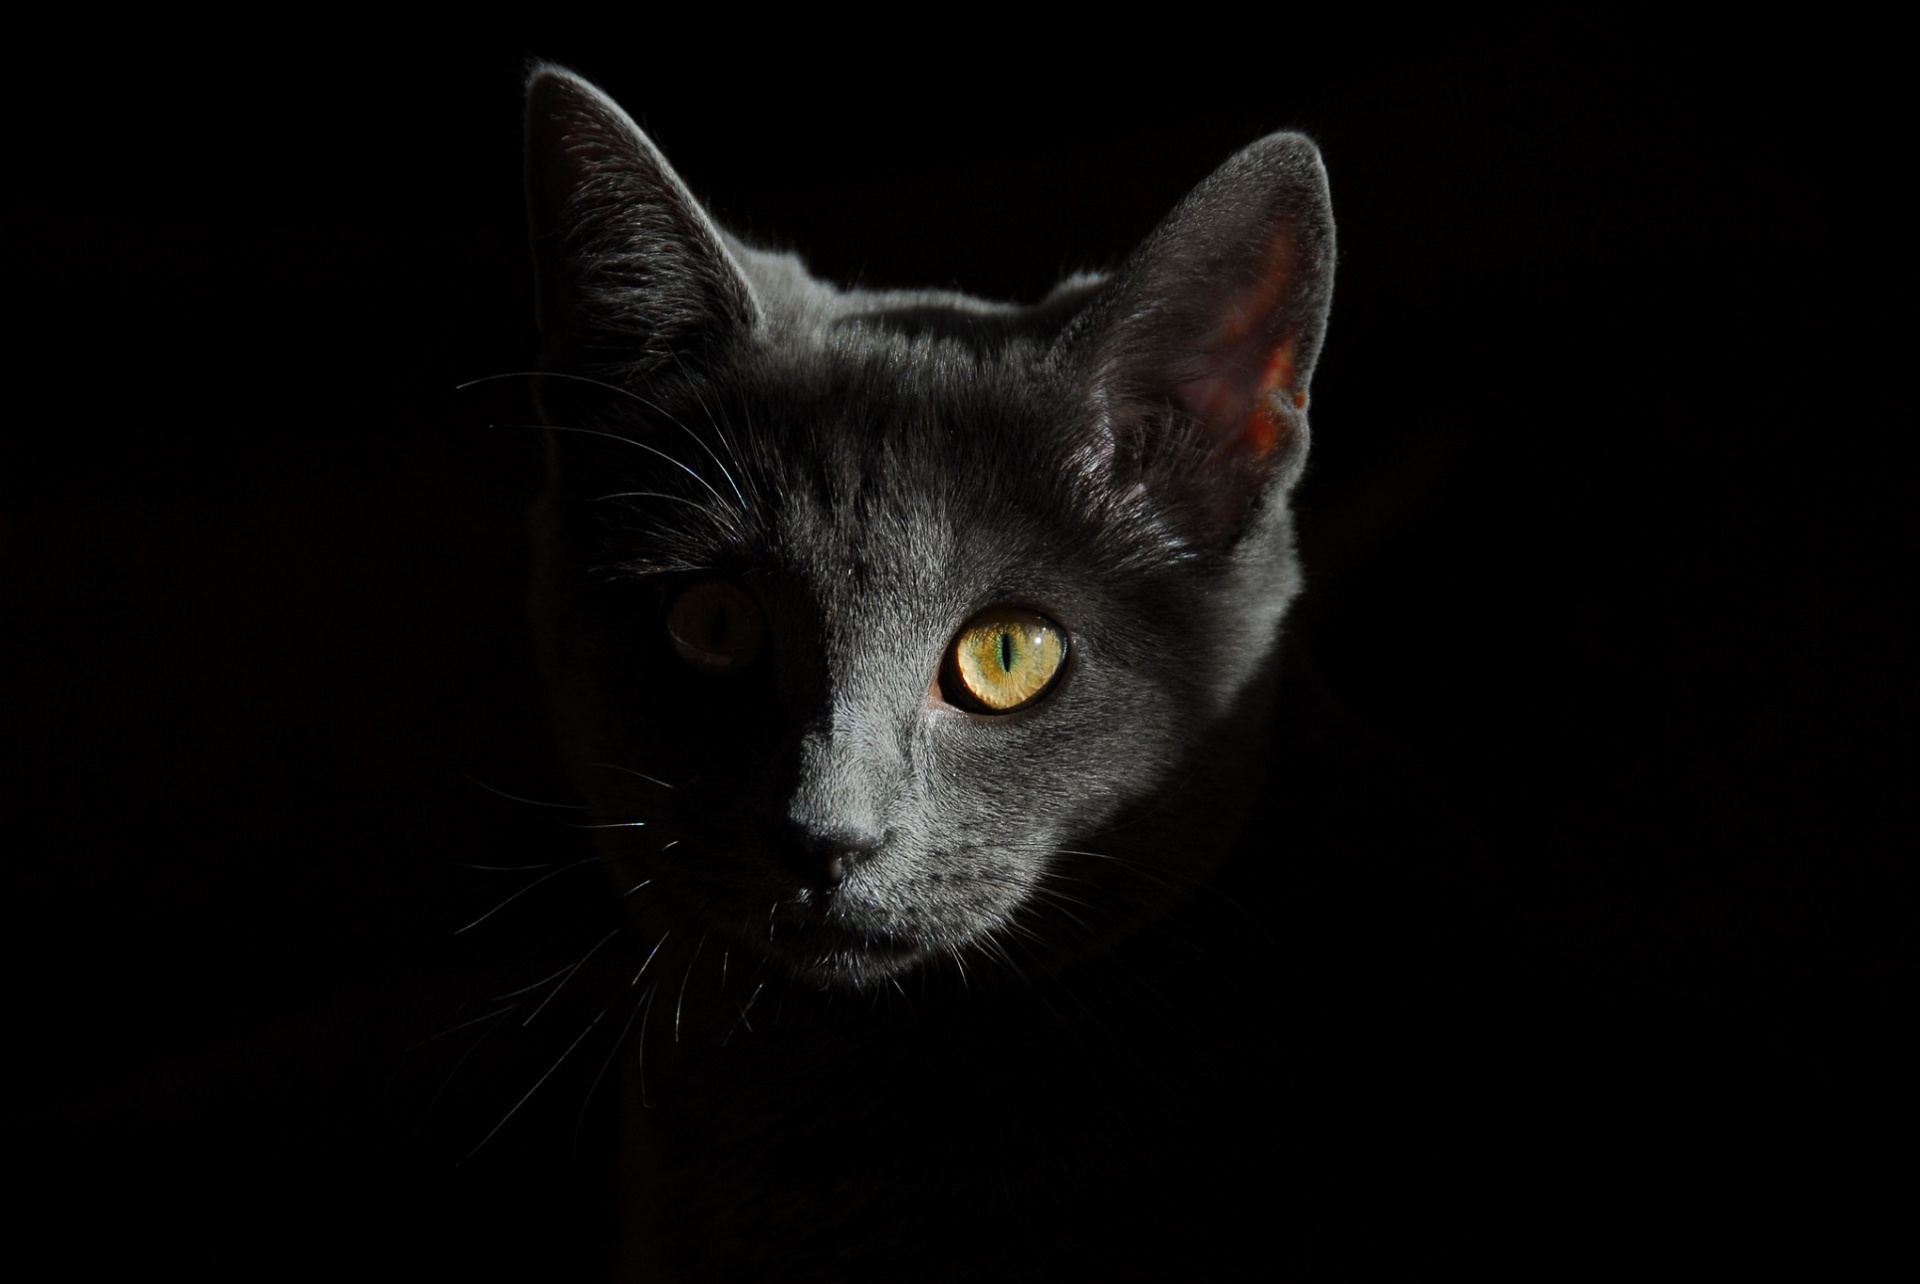 Magnificent Portrait Of Cat